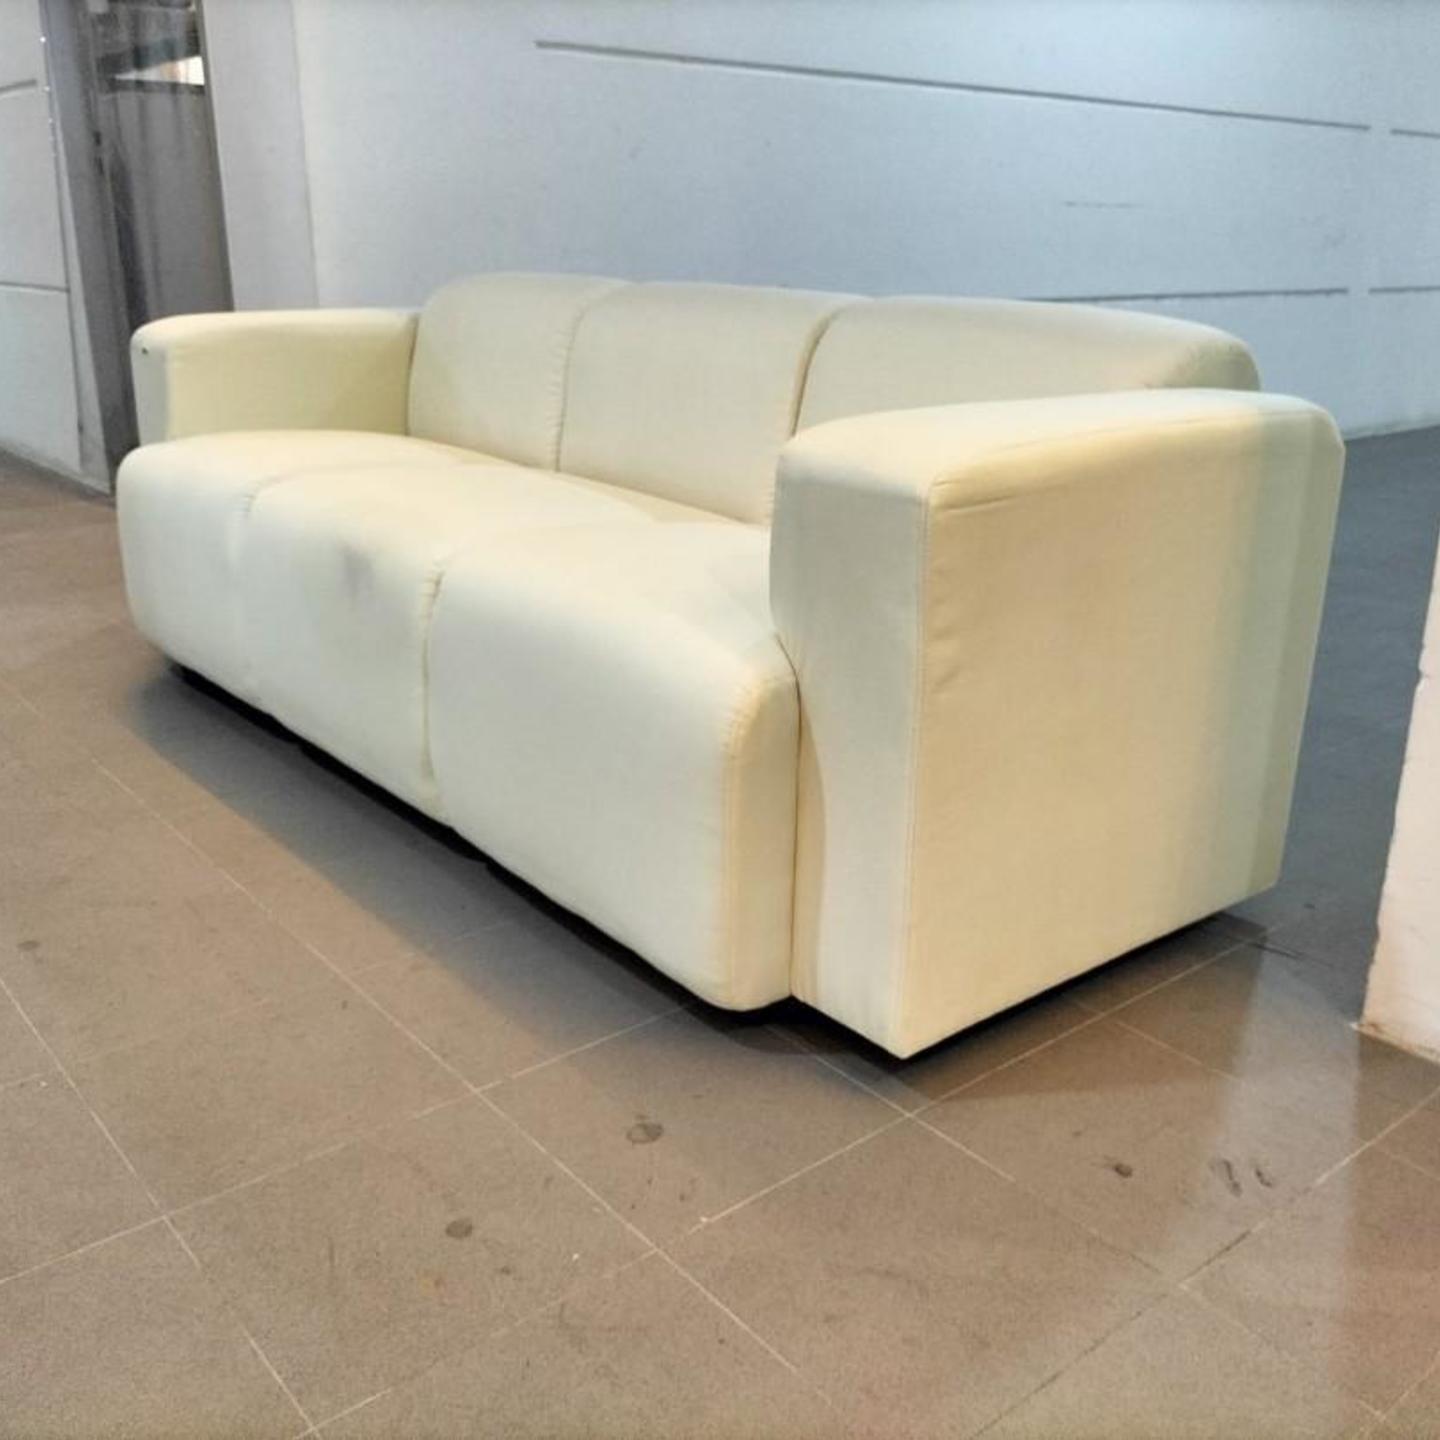 KELLER 3 Seater Sofa in CREAM WHITE